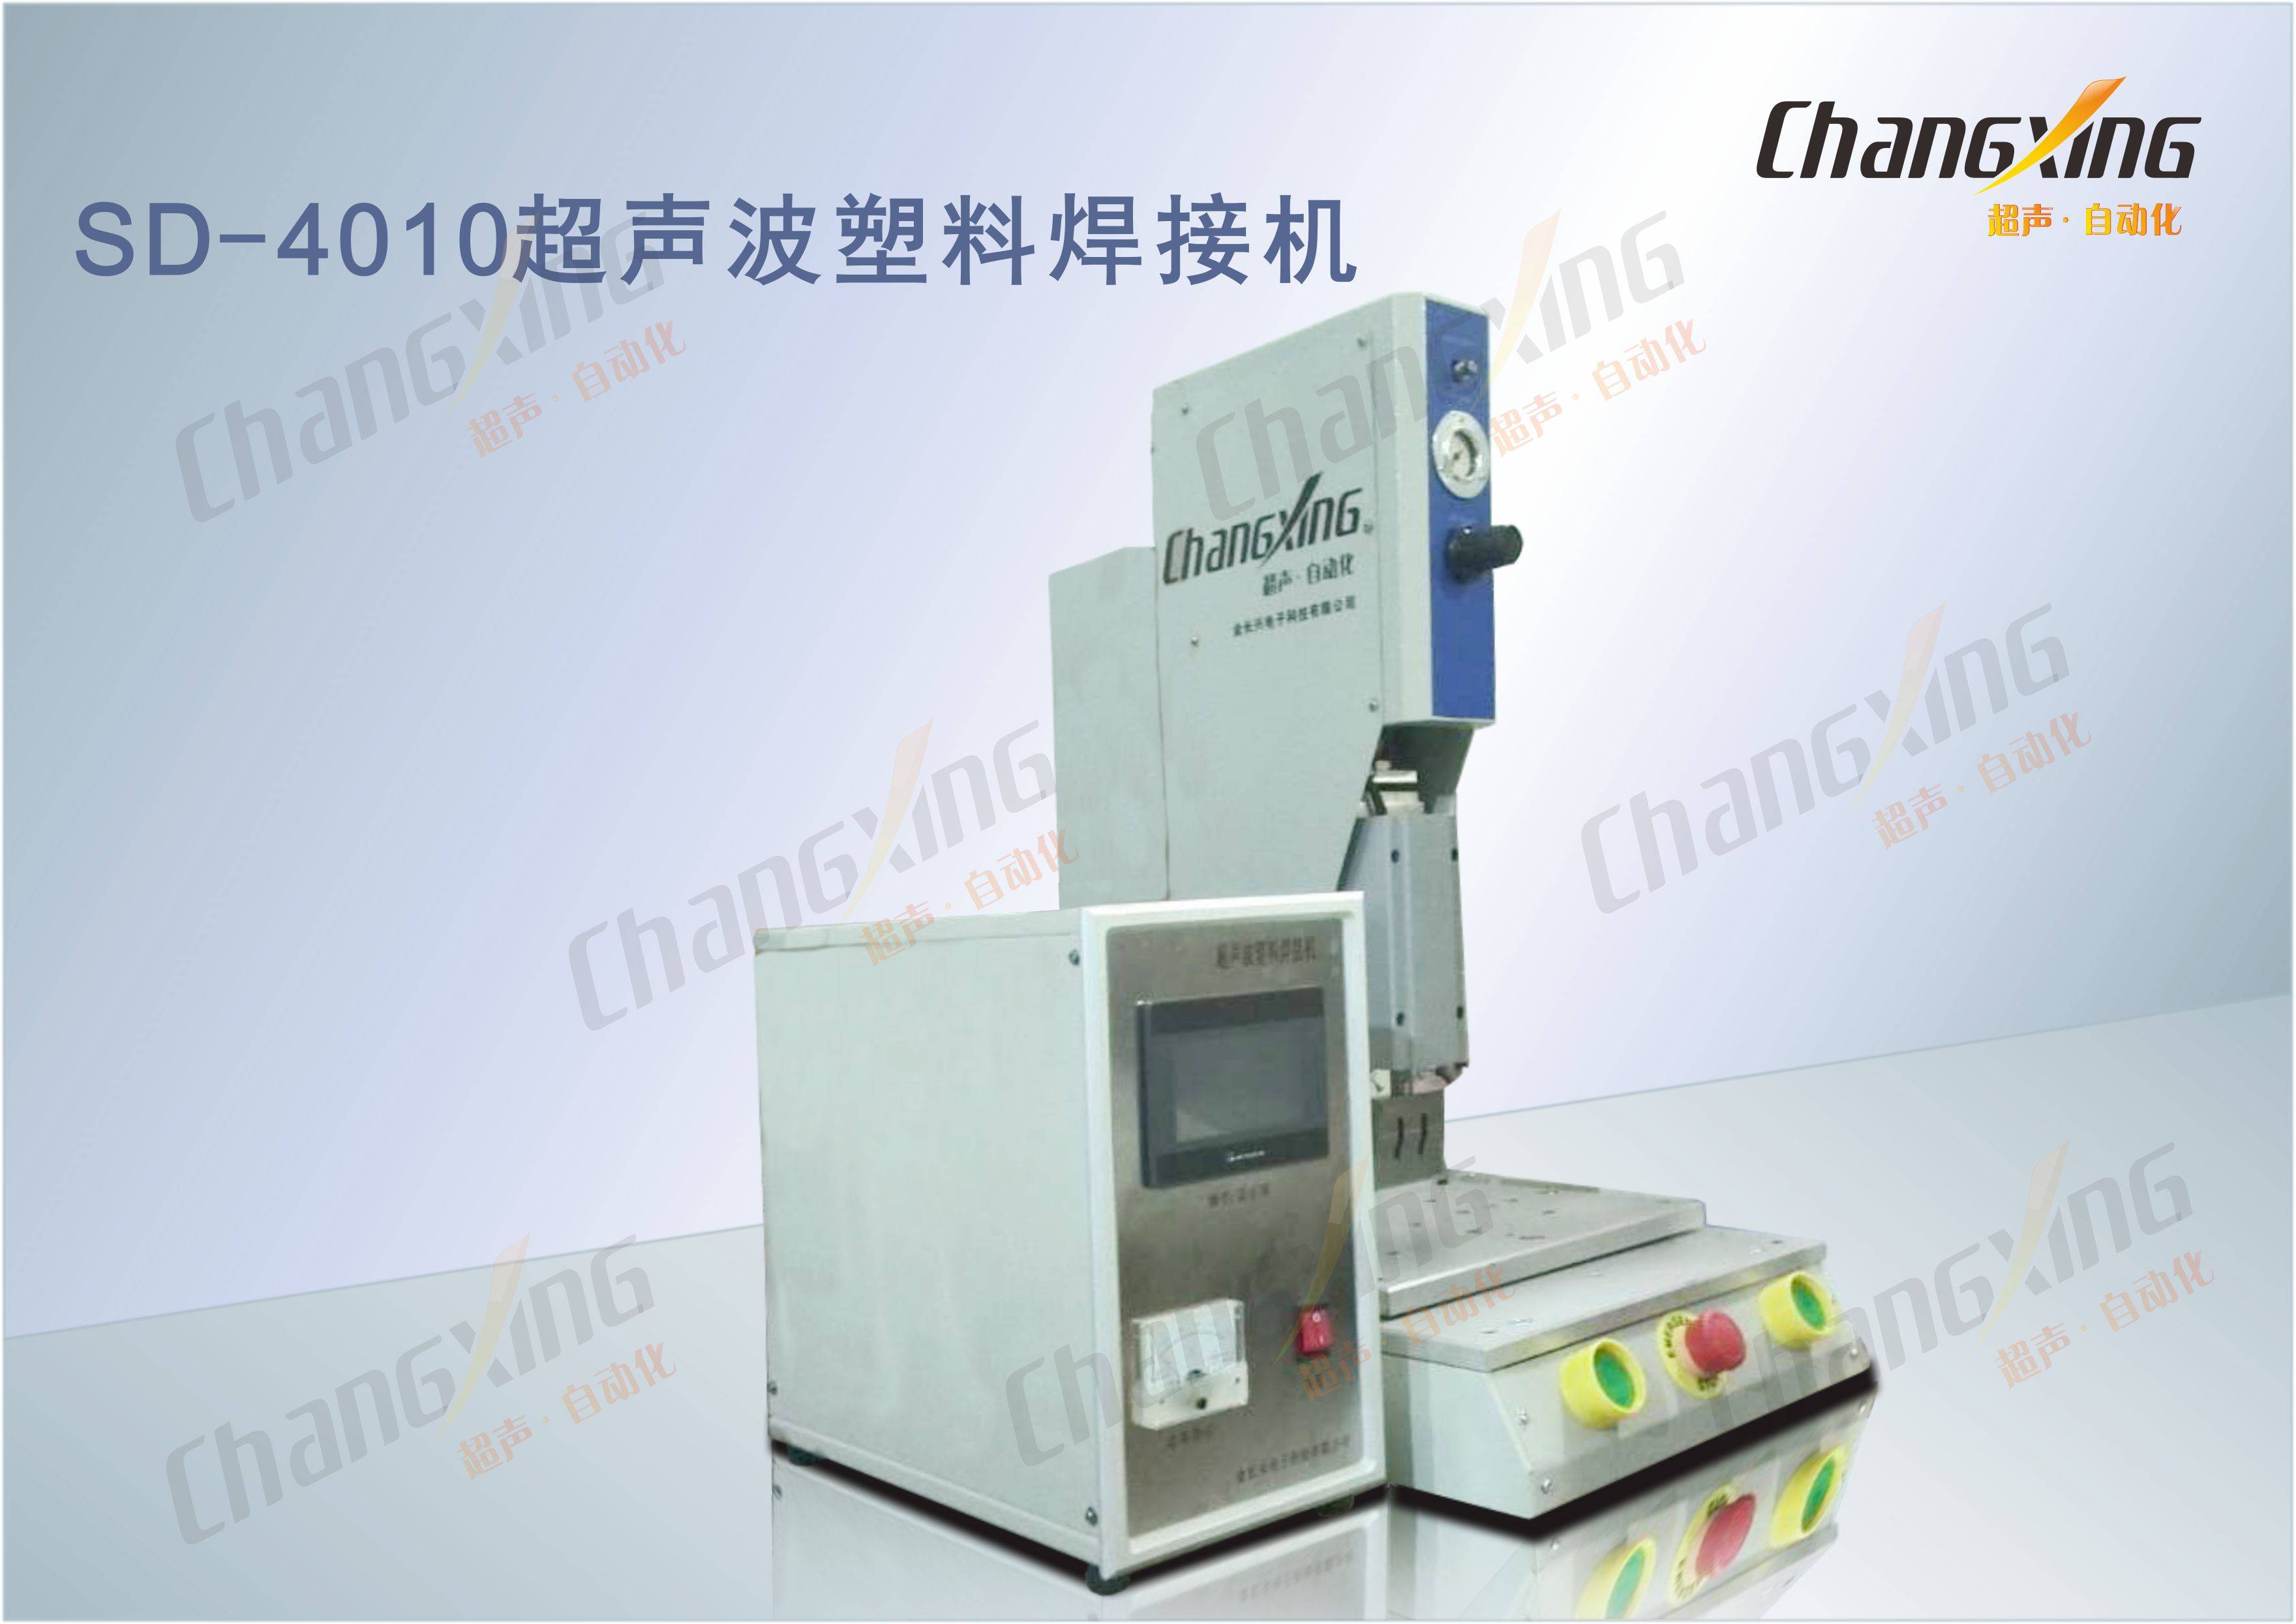 SD-4010超声波塑料焊接机(2)